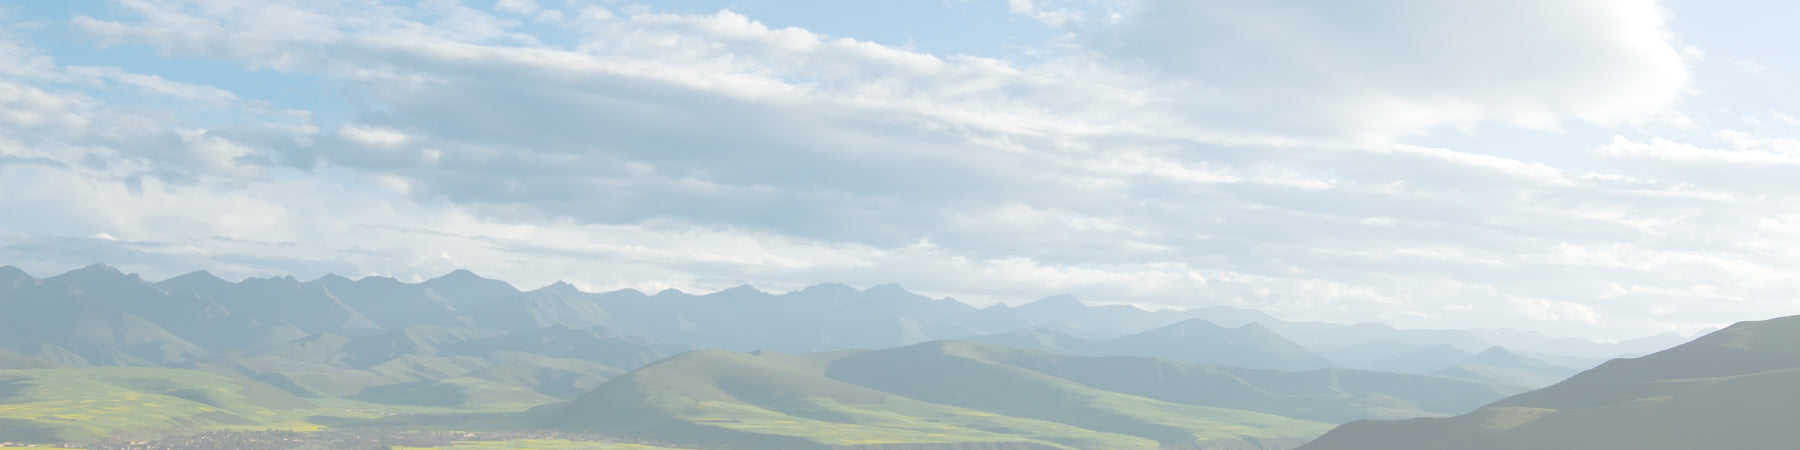 Akar Skin, Tibetan Plateau, mother nature, blue sky, green mountains, landscape, Tibet, Earth 